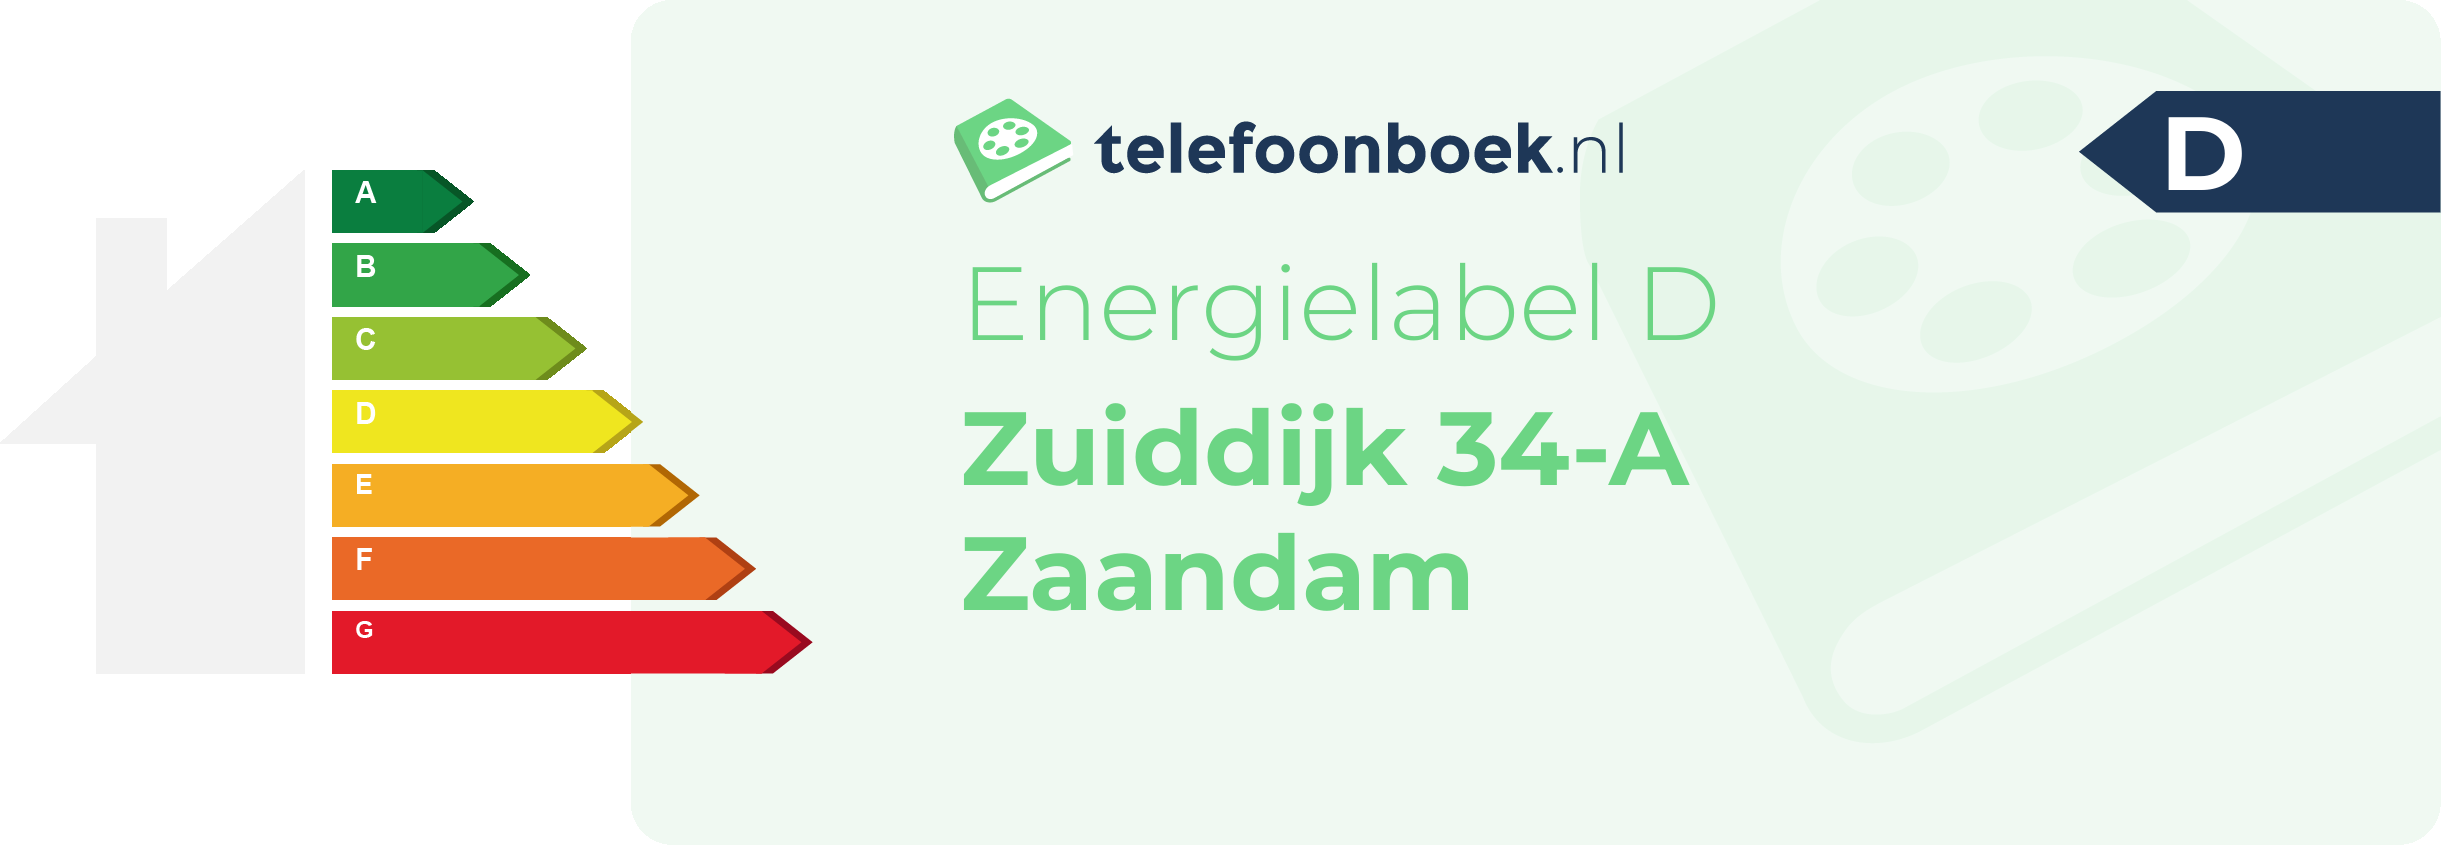 Energielabel Zuiddijk 34-A Zaandam